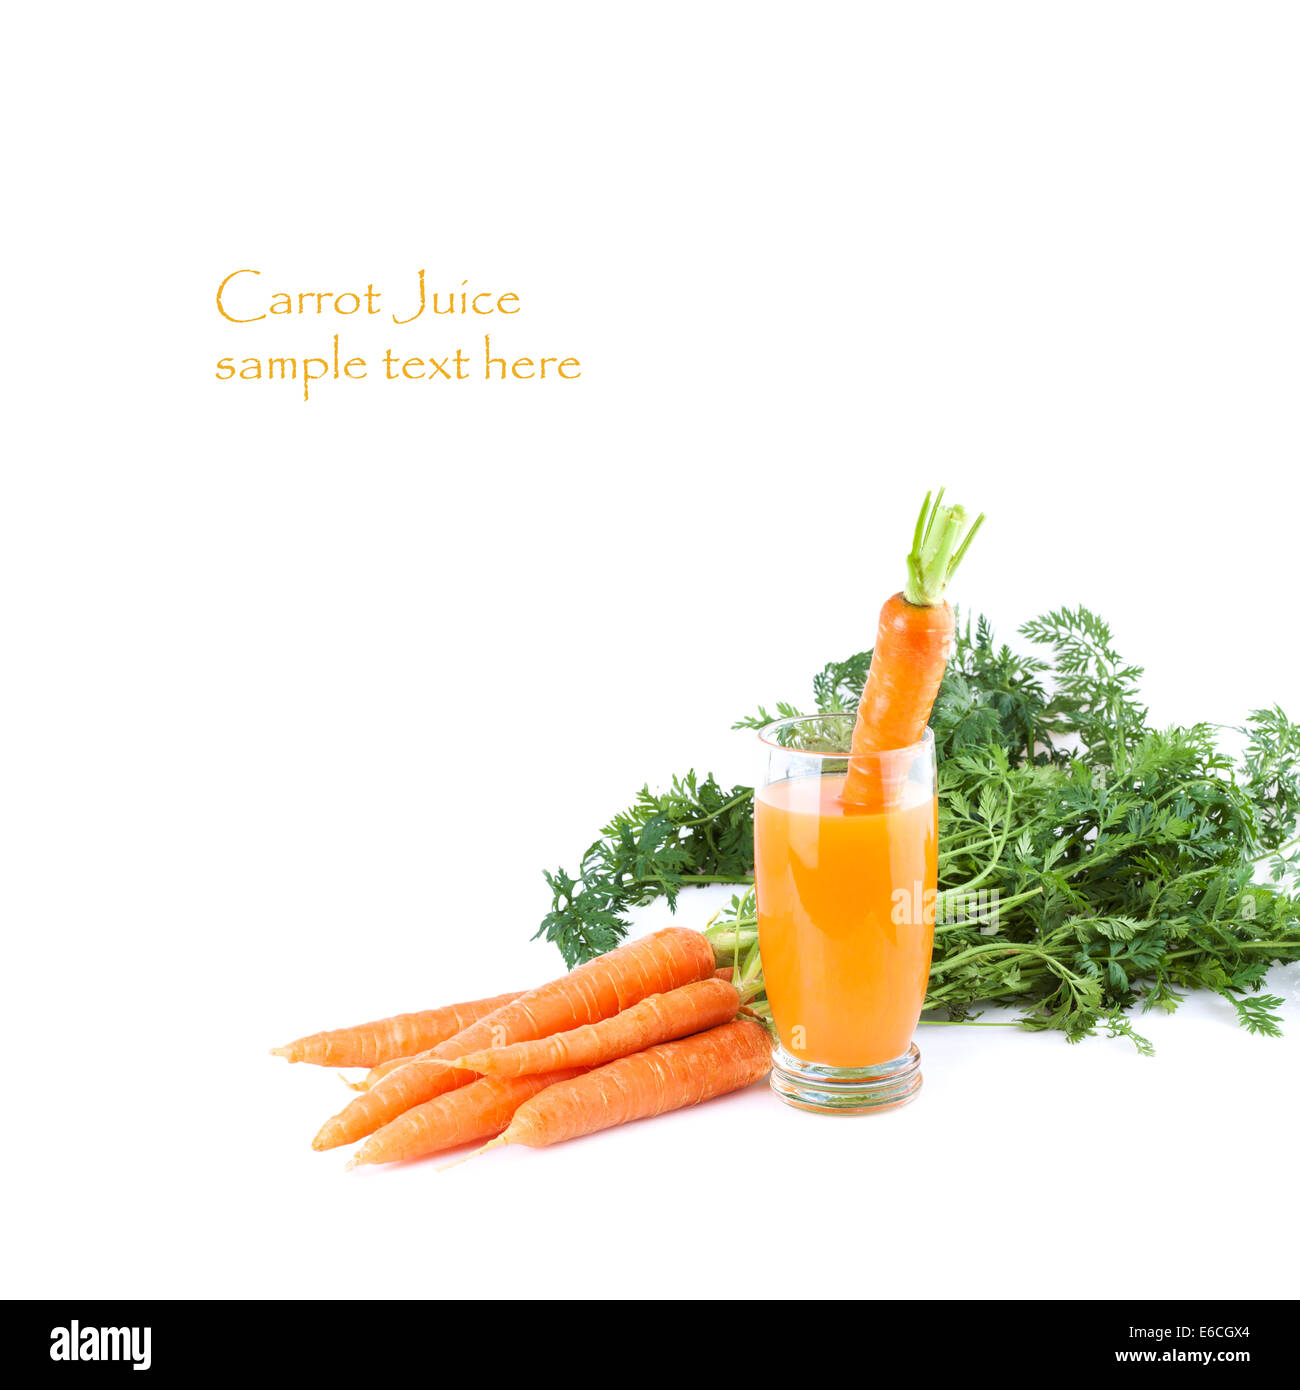 Verre de jus de carotte avec des ingrédients frais Banque D'Images